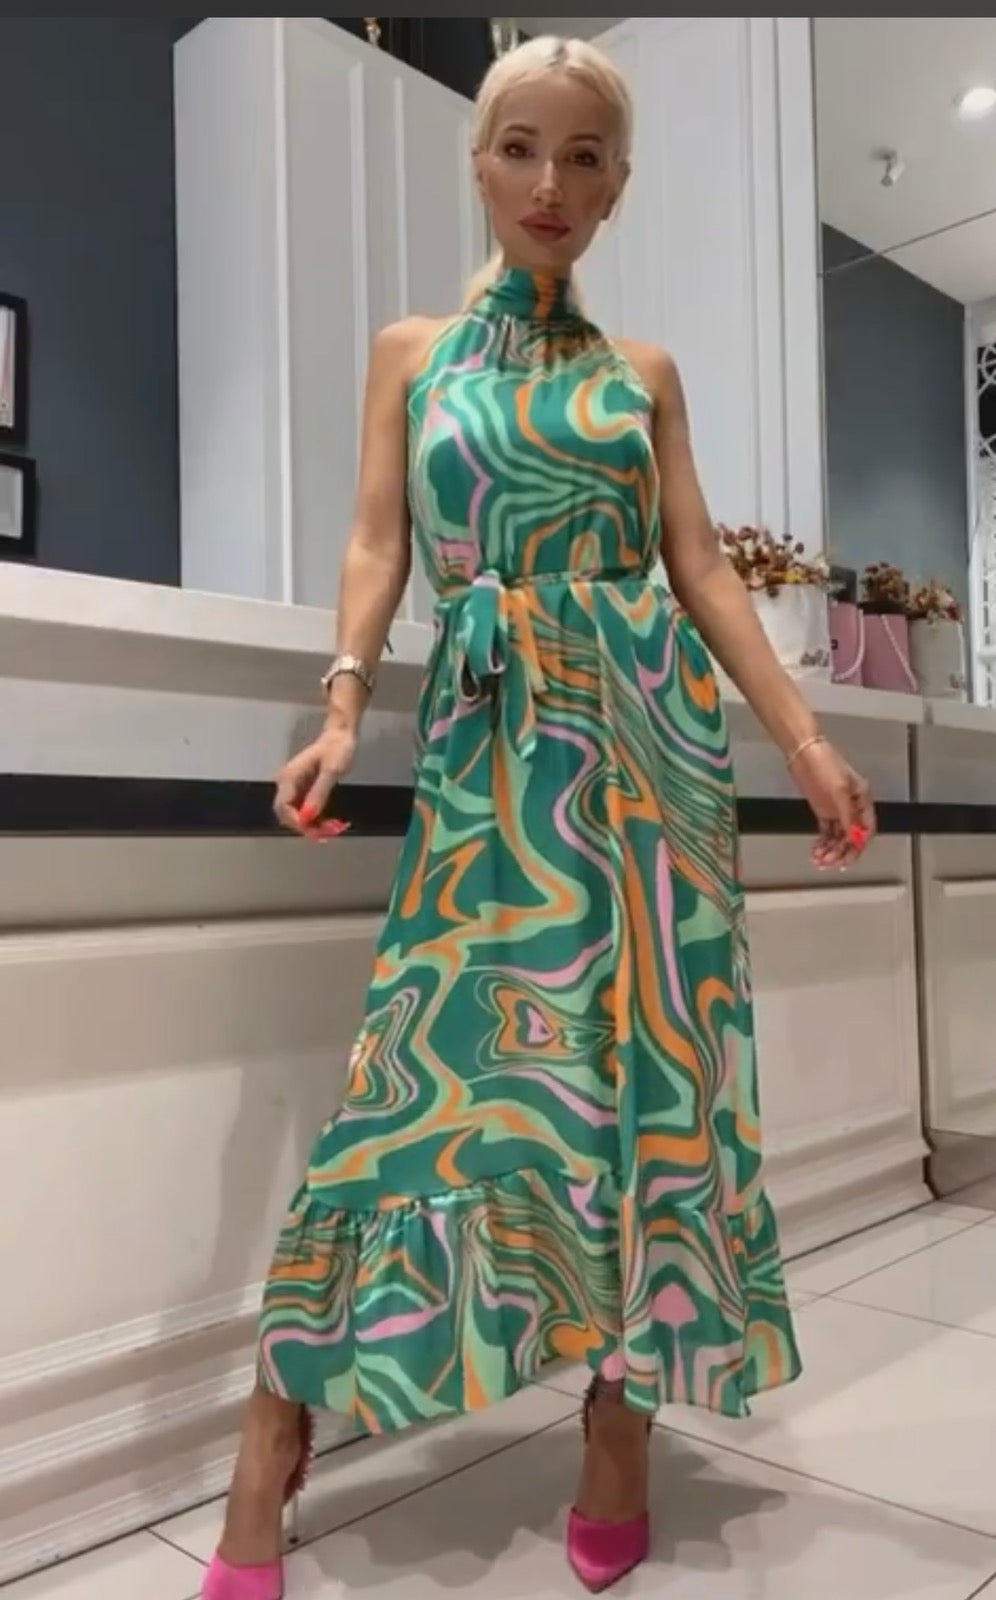 Дамска рокля BETIN  https://bvseductive.com/products/дамска-рокля-betina-5  стилна дълга рокля с красив флорален принт висококачествена изработка от ефирна материя със свободна кройка, подходяща за всяка фигура чудесен избор зДамска рокля Lauren Green  https://bvseductive.com/products/womans-s-dresses-lauren-green  стилна дълга рокля с красив флорален принт висококачествена изработка от ефирна материя със свободна кройка, подходяща за всяка фигура чудесен избор за Вашата..а Вашата нежна, женствена визия